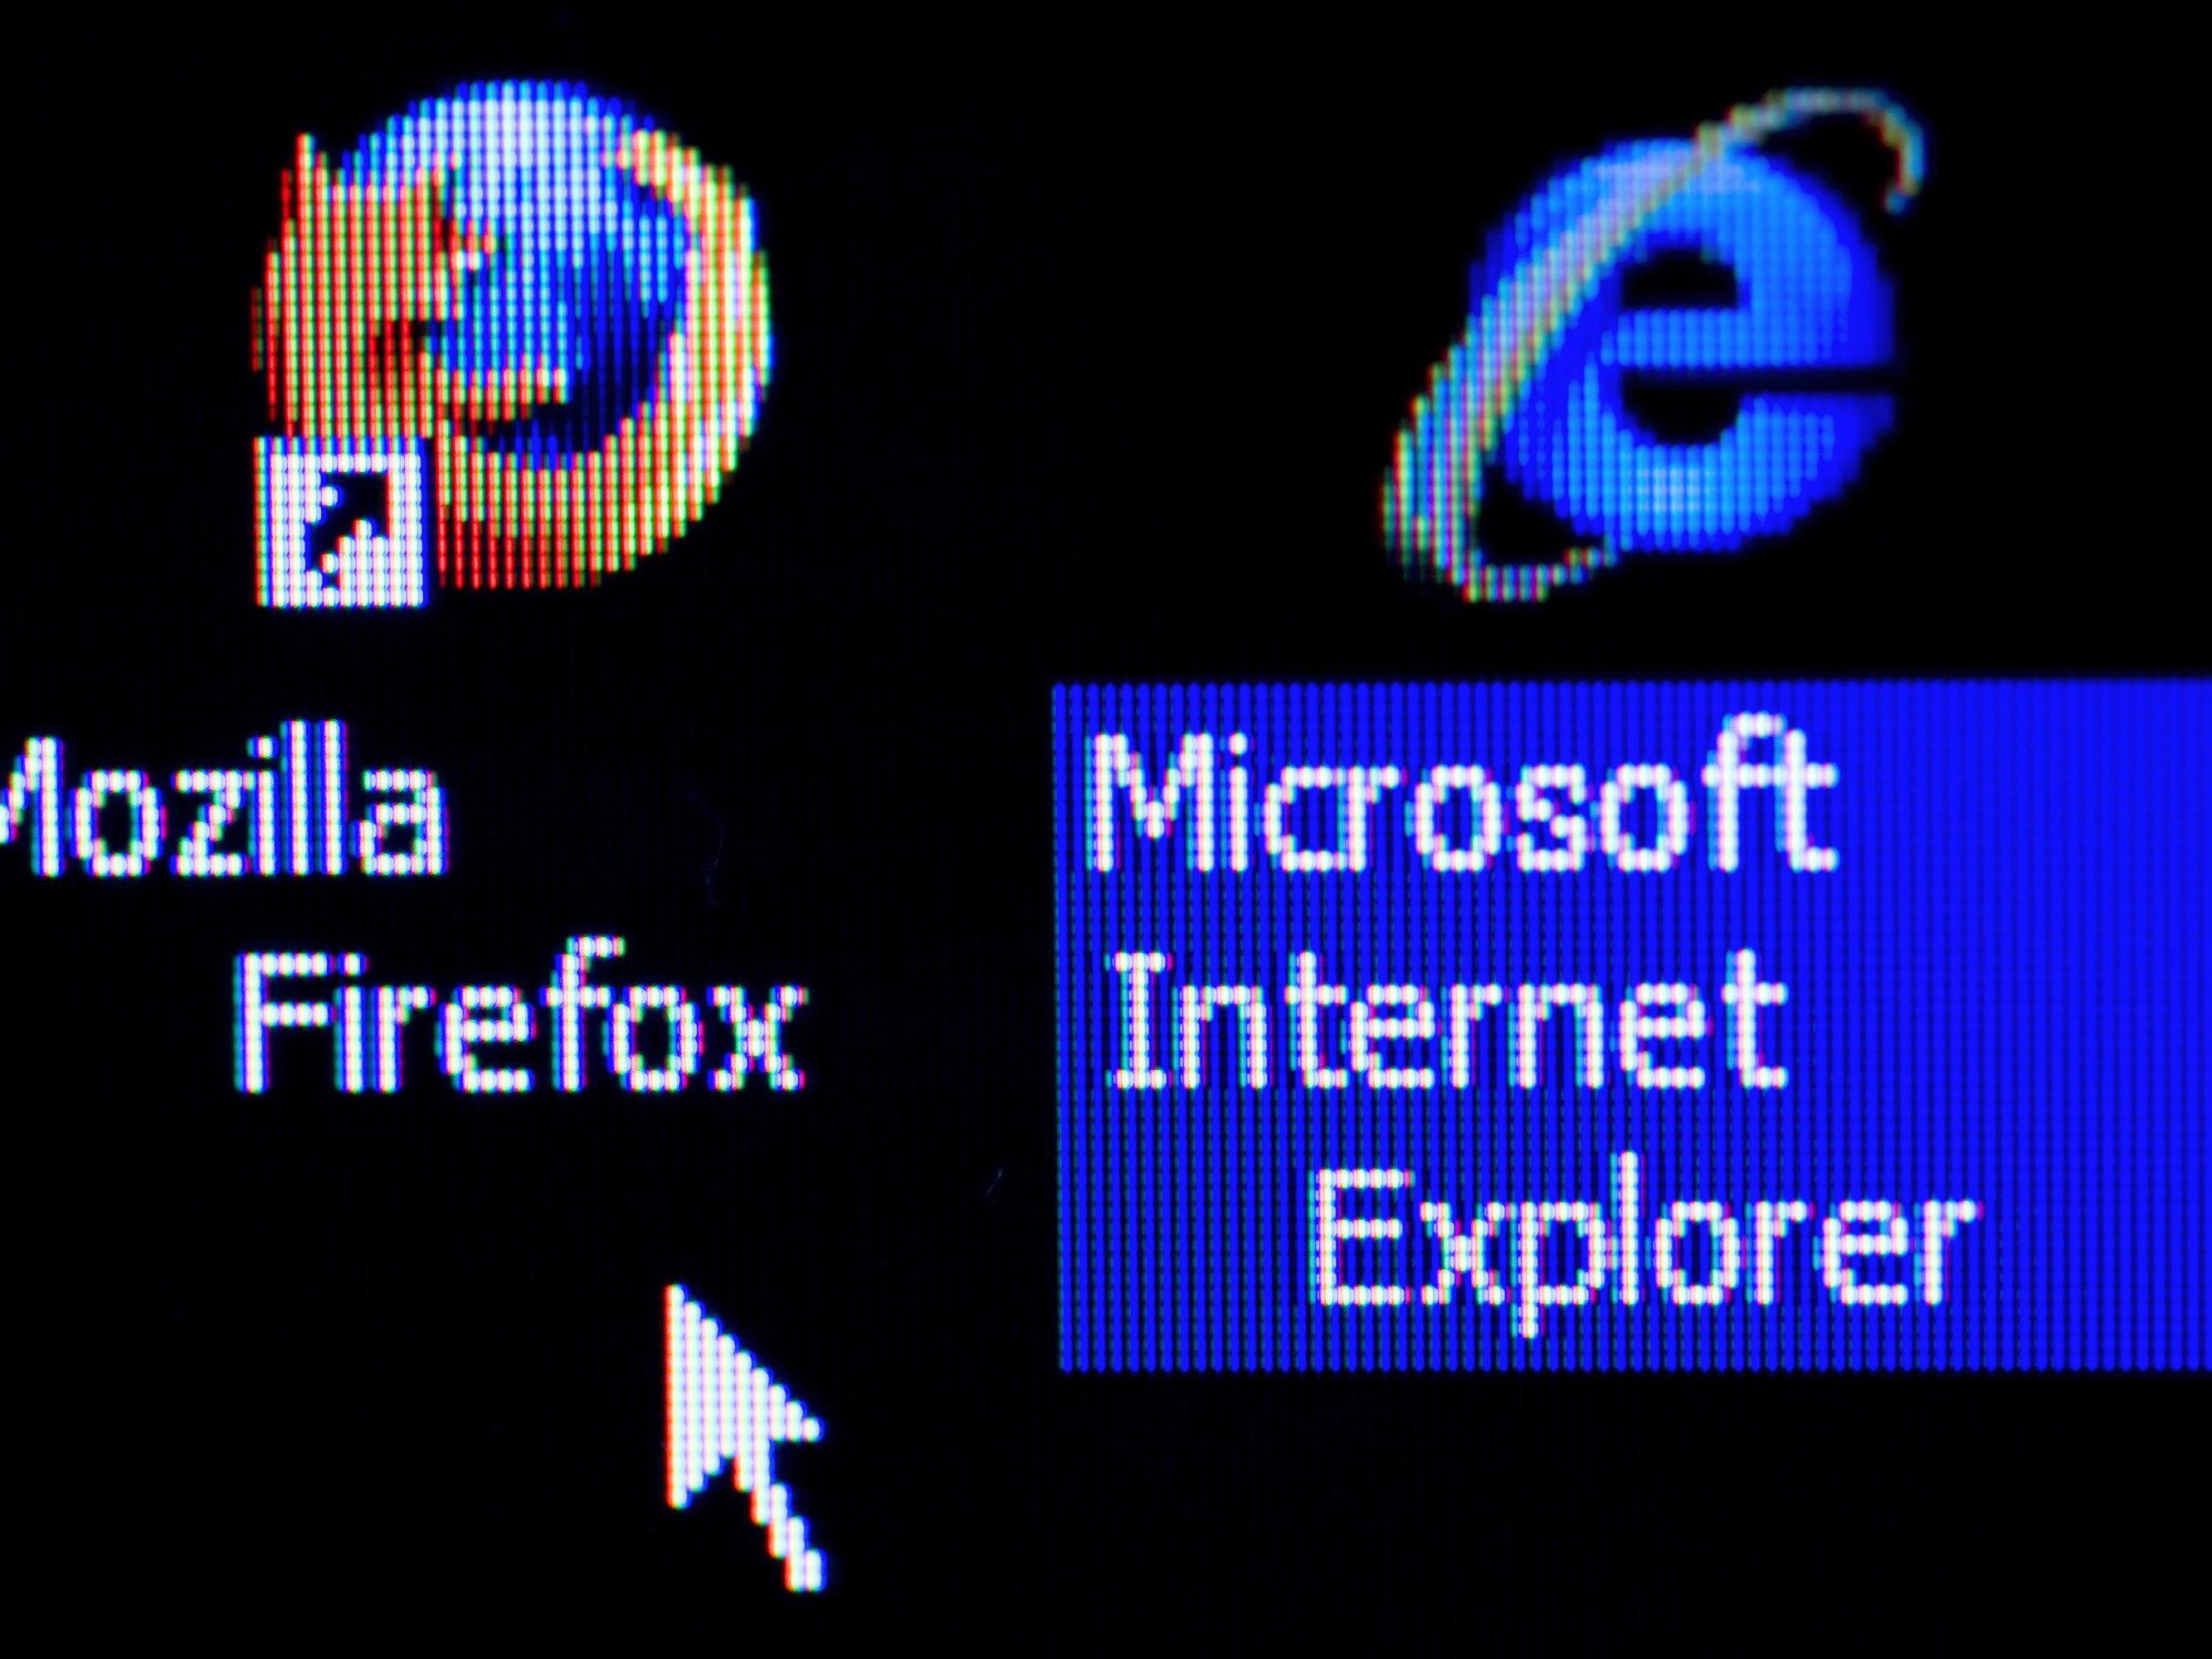 Der Internet Explorer hat ausgedient. Endlich hat das Leiden ein Ende, tönt es u.a. aus dem Netz.